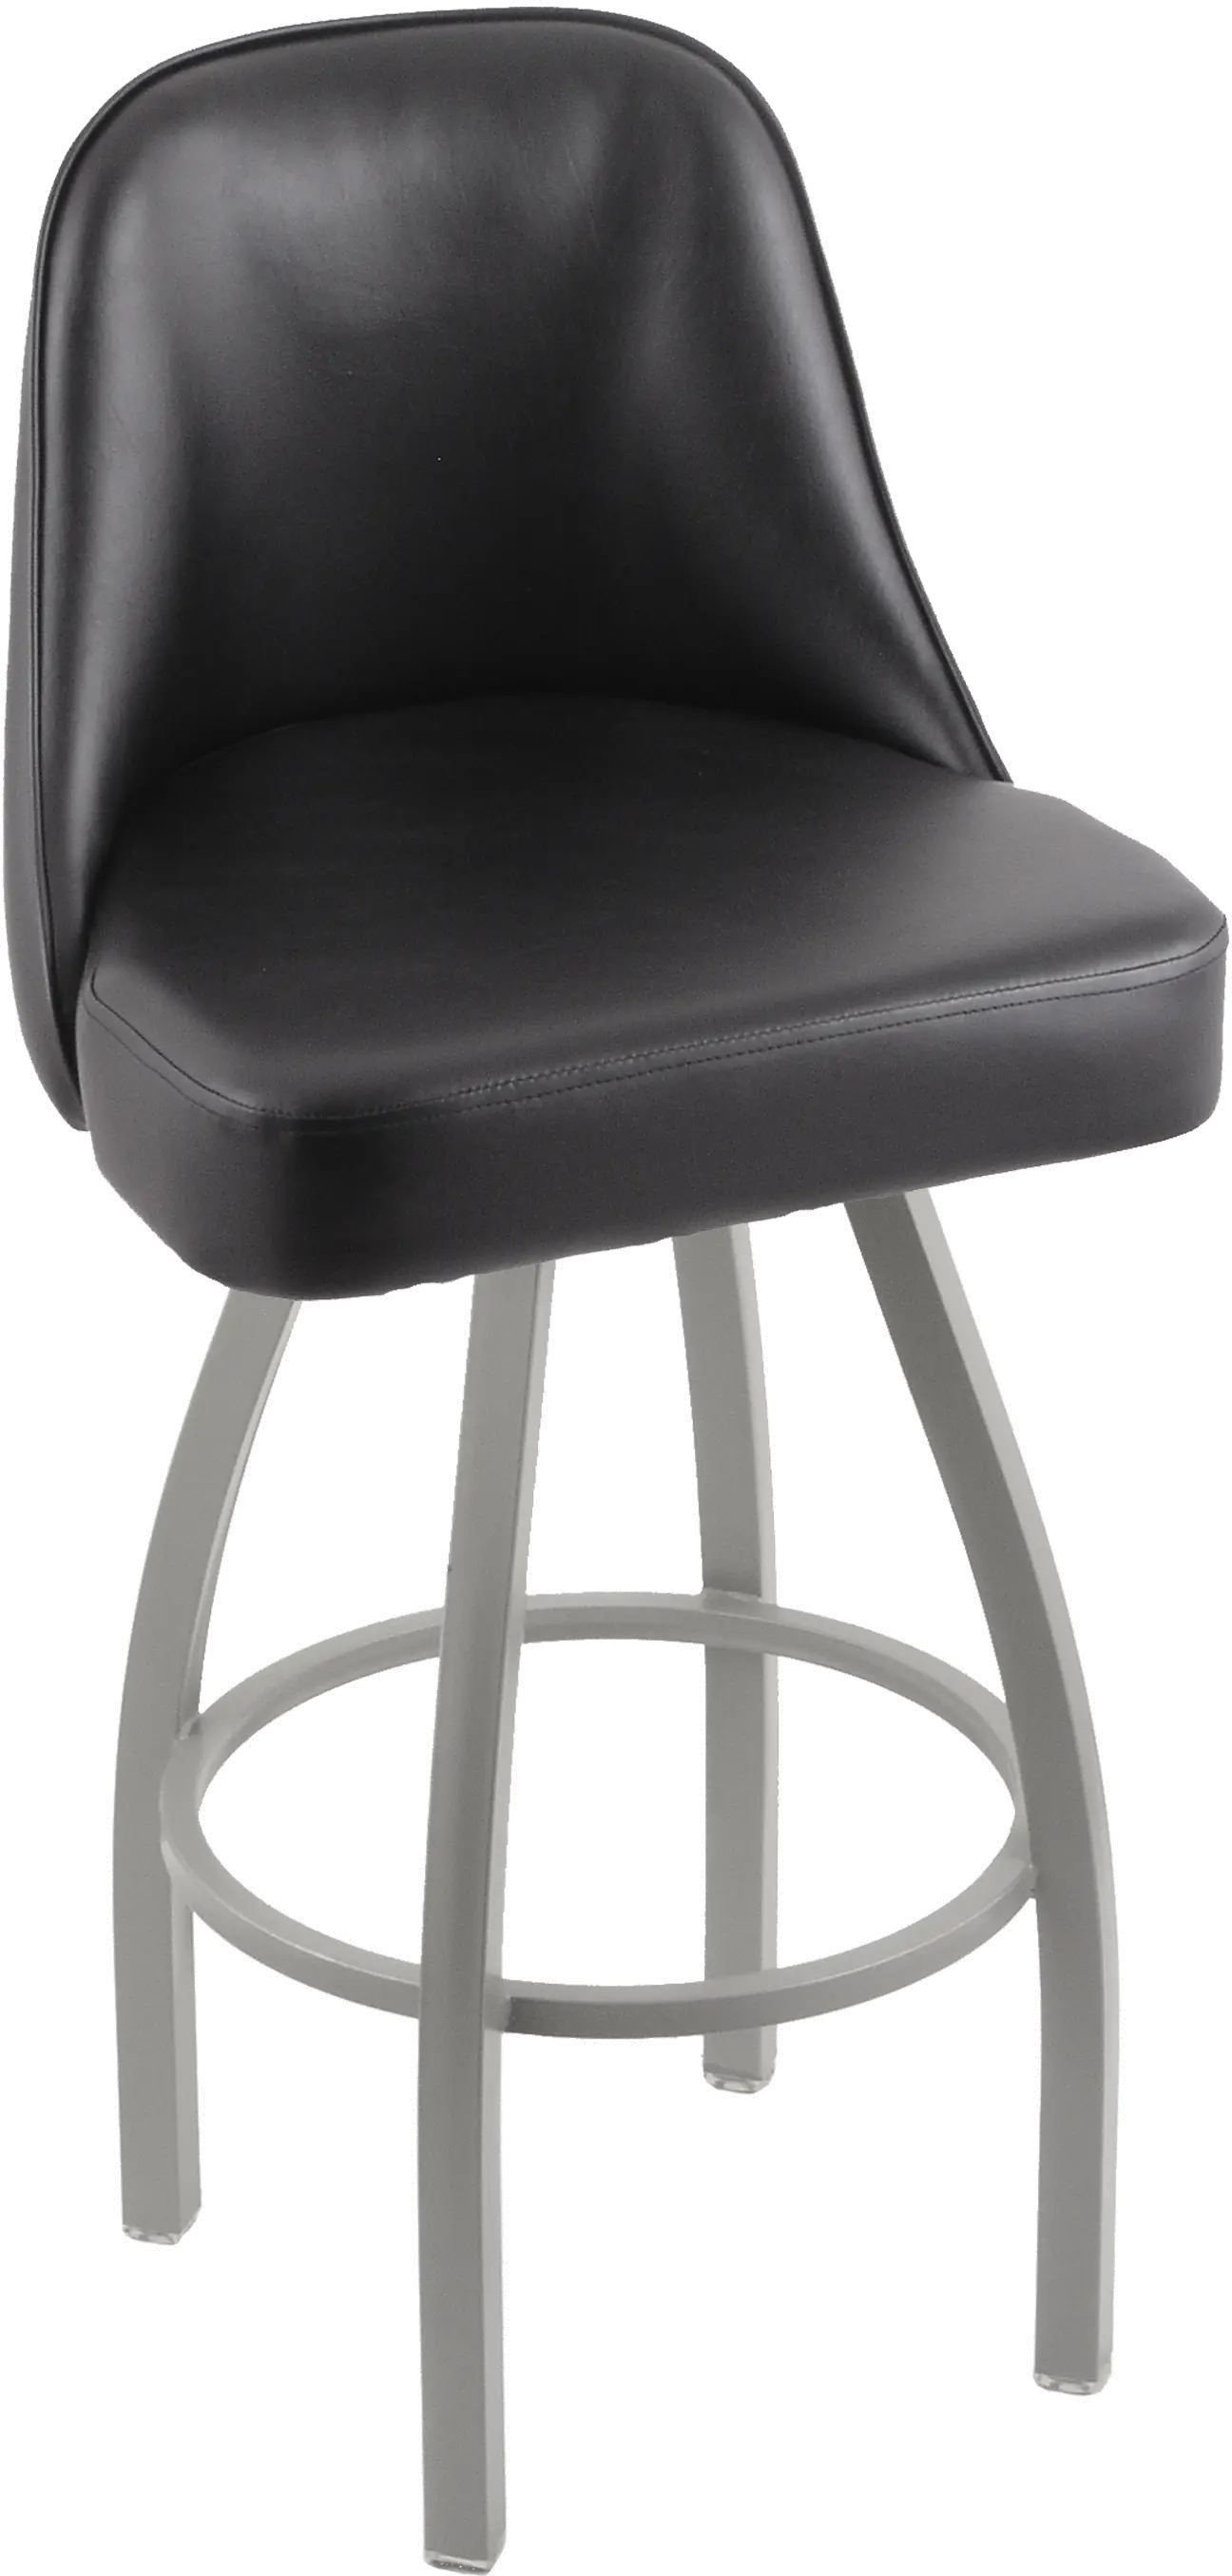 84030ANBLKVINYL Grizzly Black Upholstered Swivel Bar Stool sku 84030ANBLKVINYL